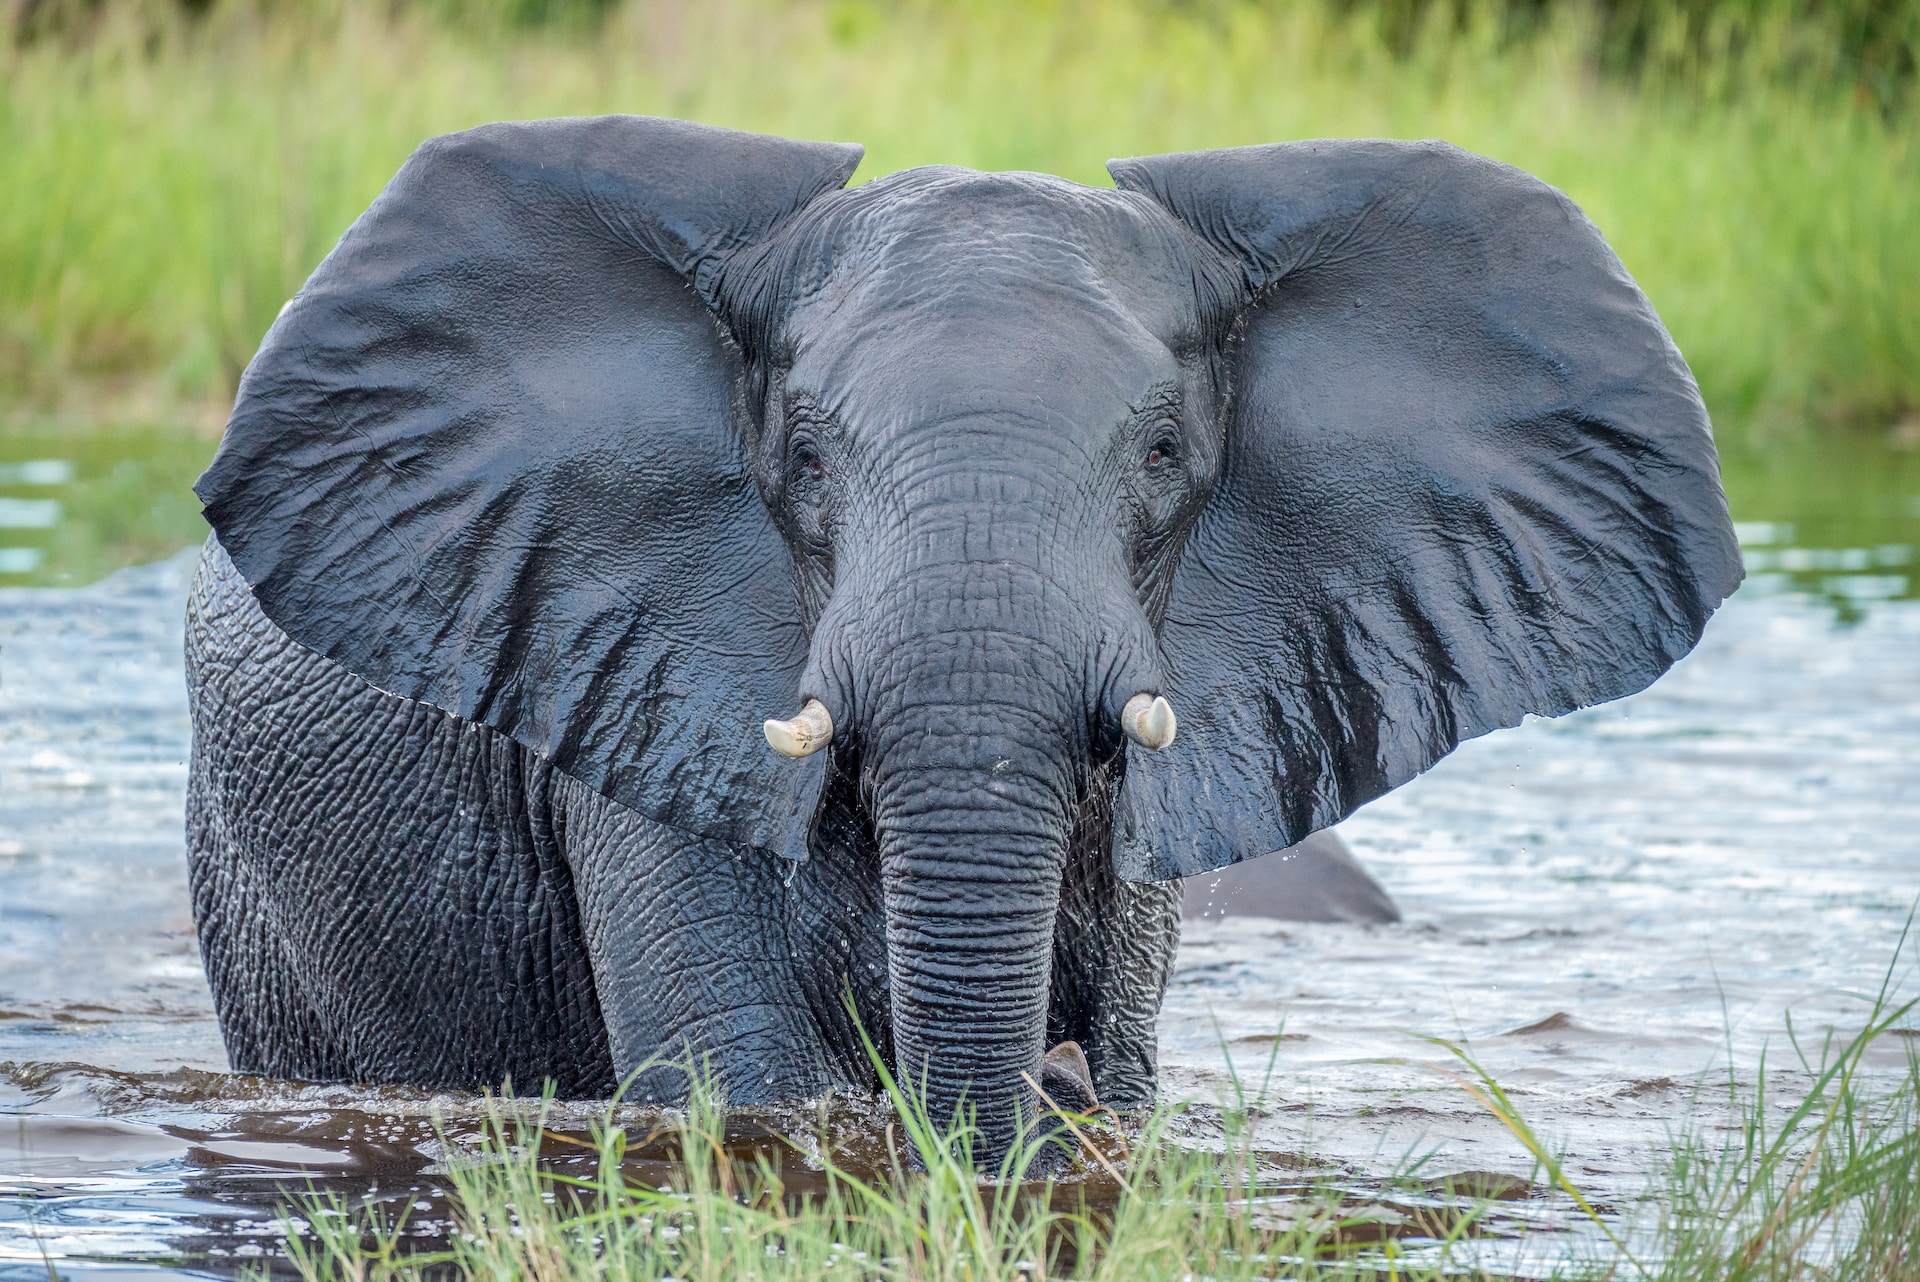 हाथियों के झुंड के बारे में रोचक तथ्य| Fun Facts About Elephants Herds in Hindi